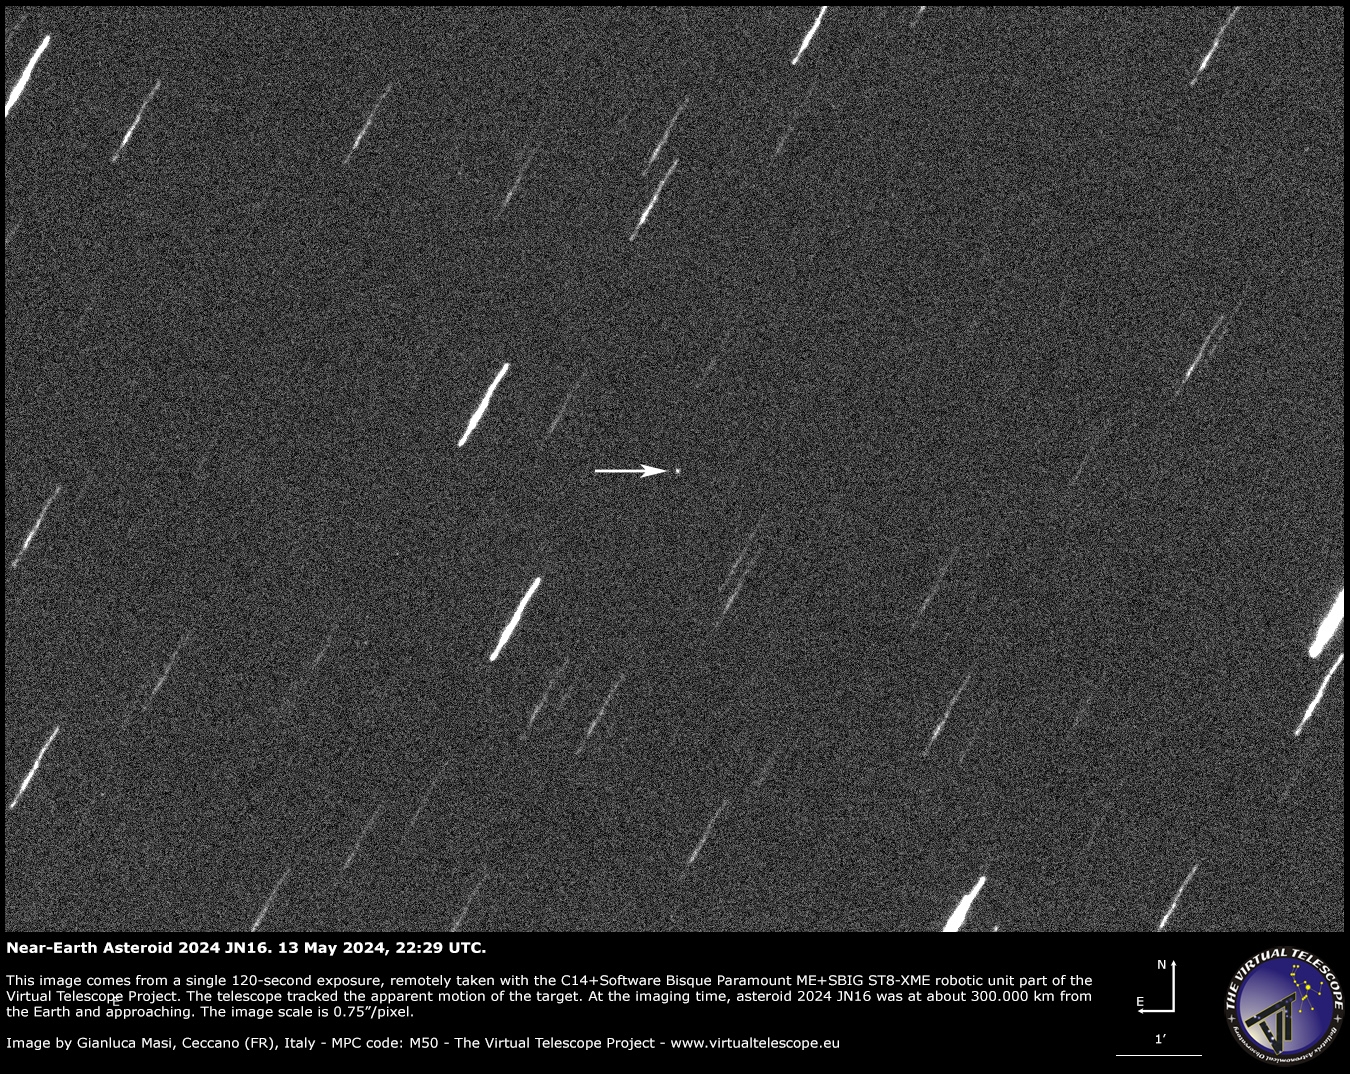 Околоземный астероид 2024 NJ16 очень близко приближается к Земле: Изображение – 13 мая 2024 г.